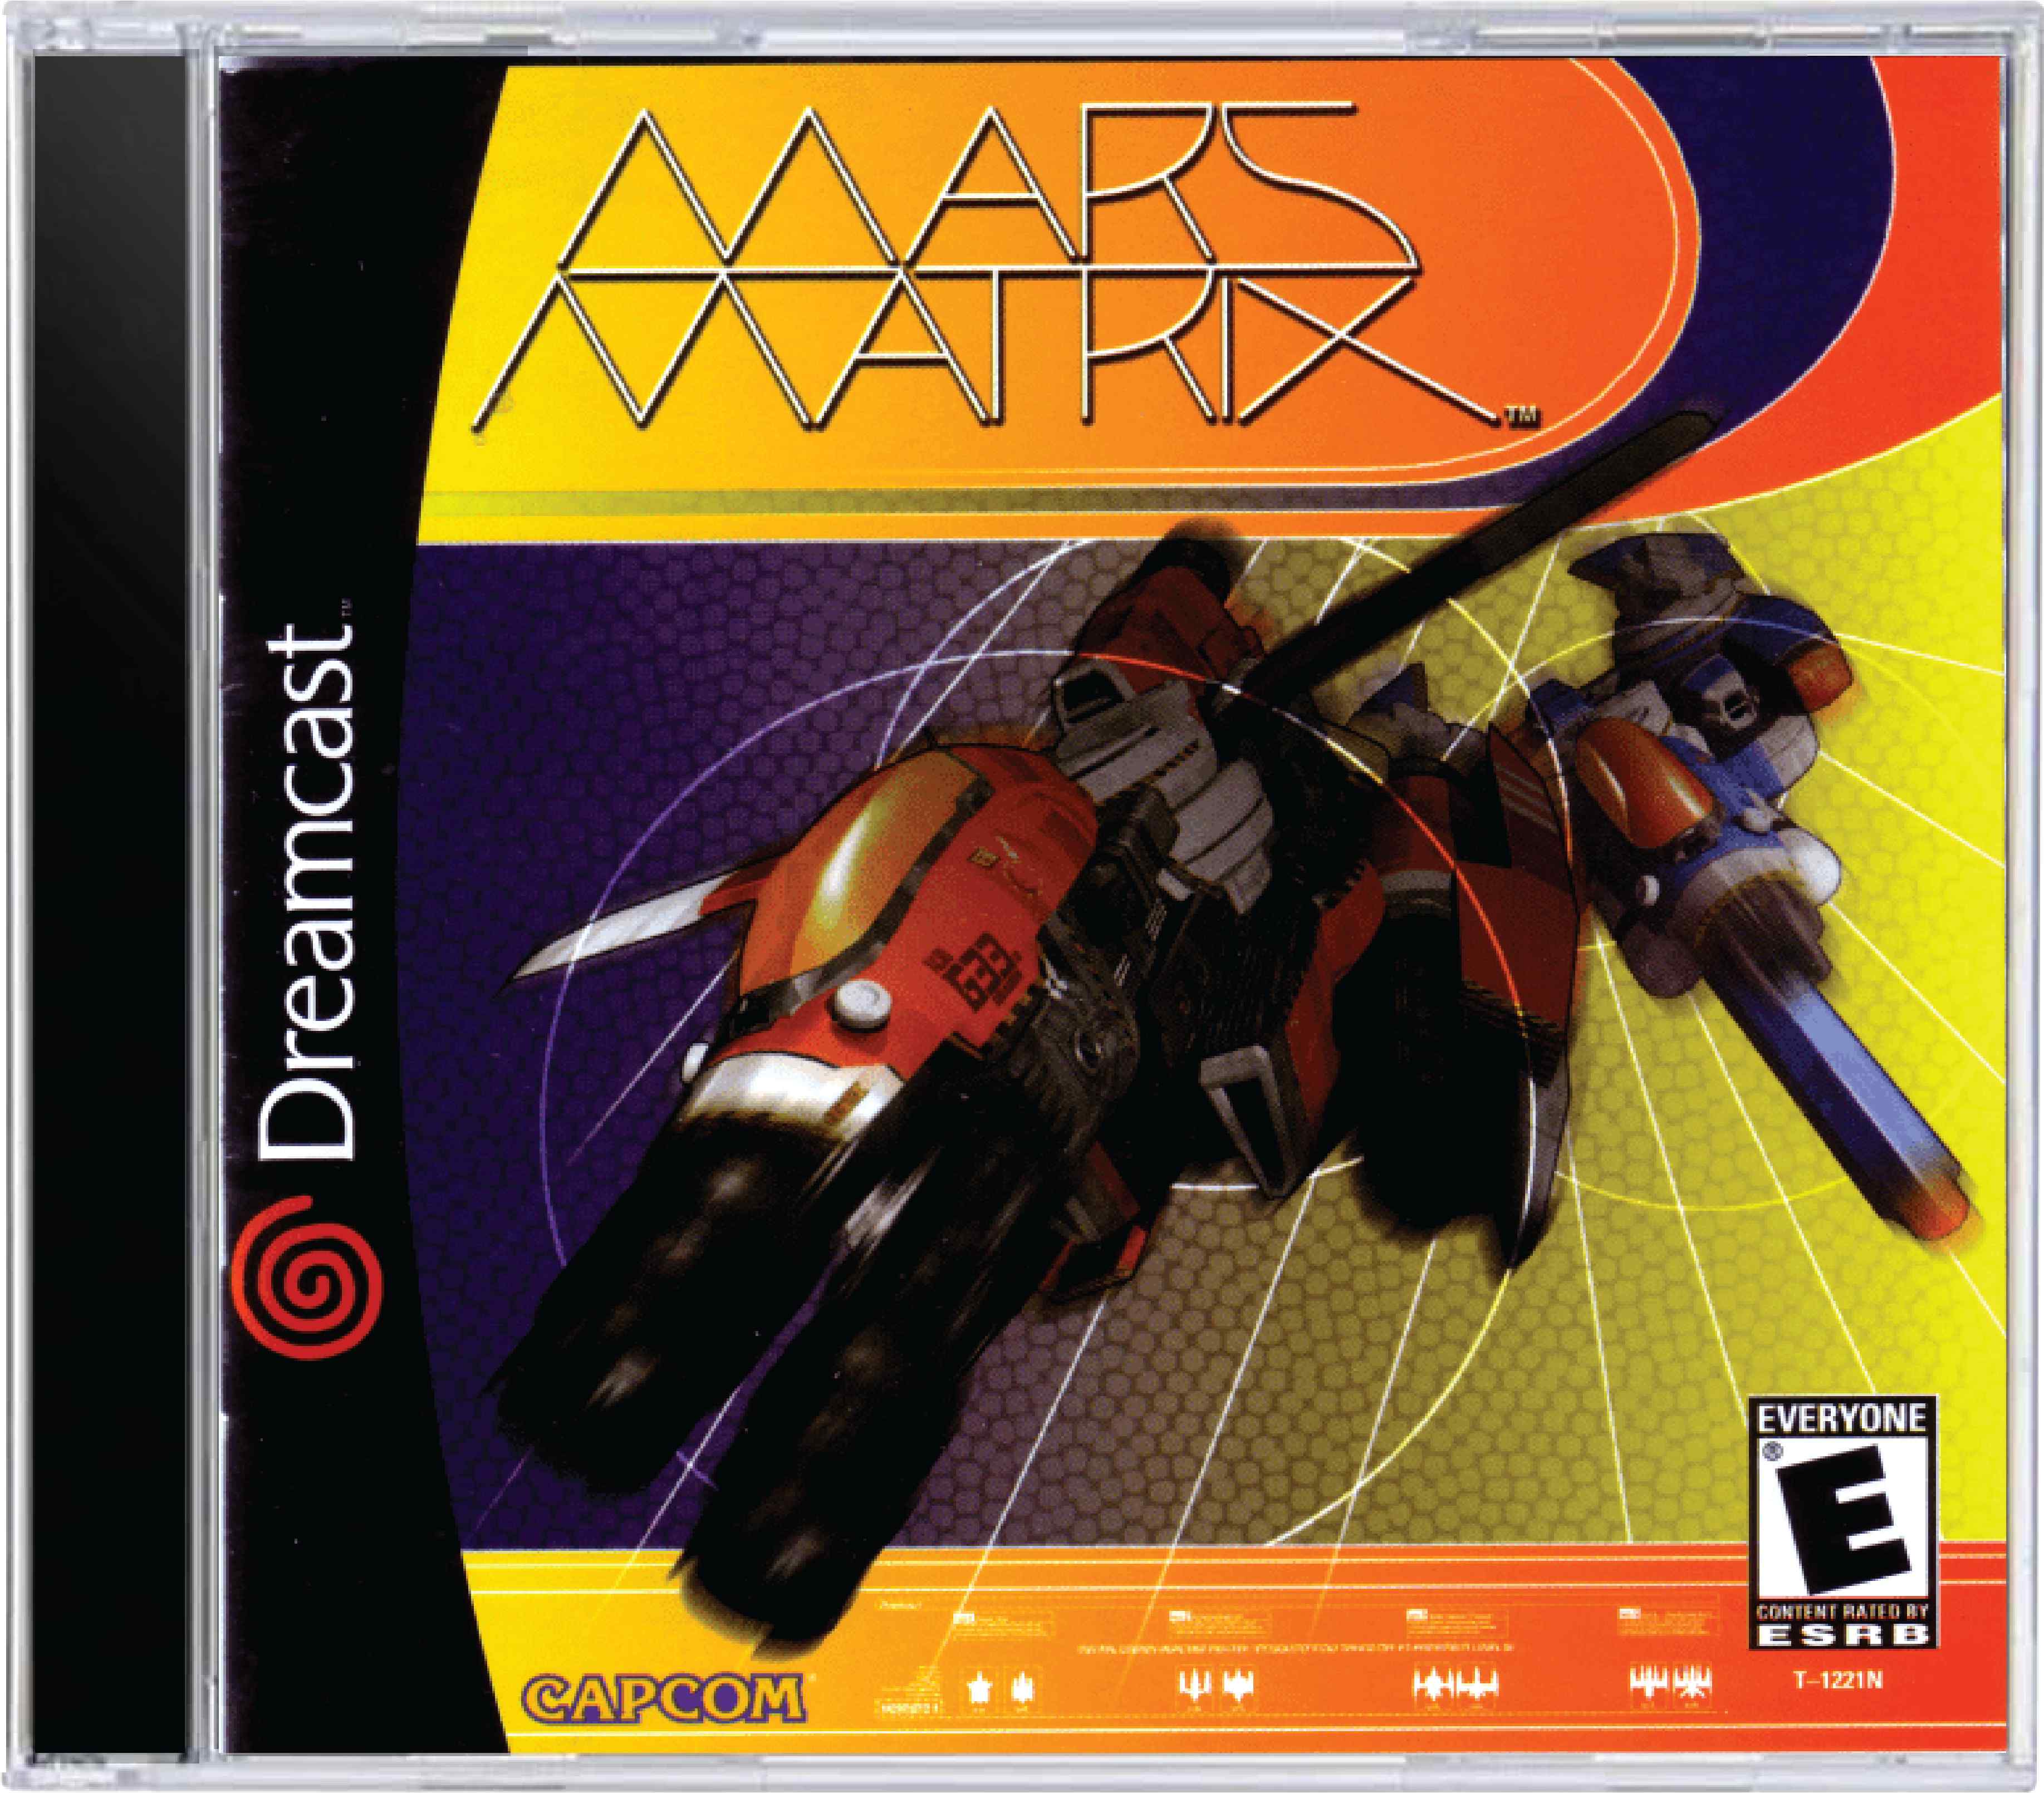 Mars Matrix Cover Art